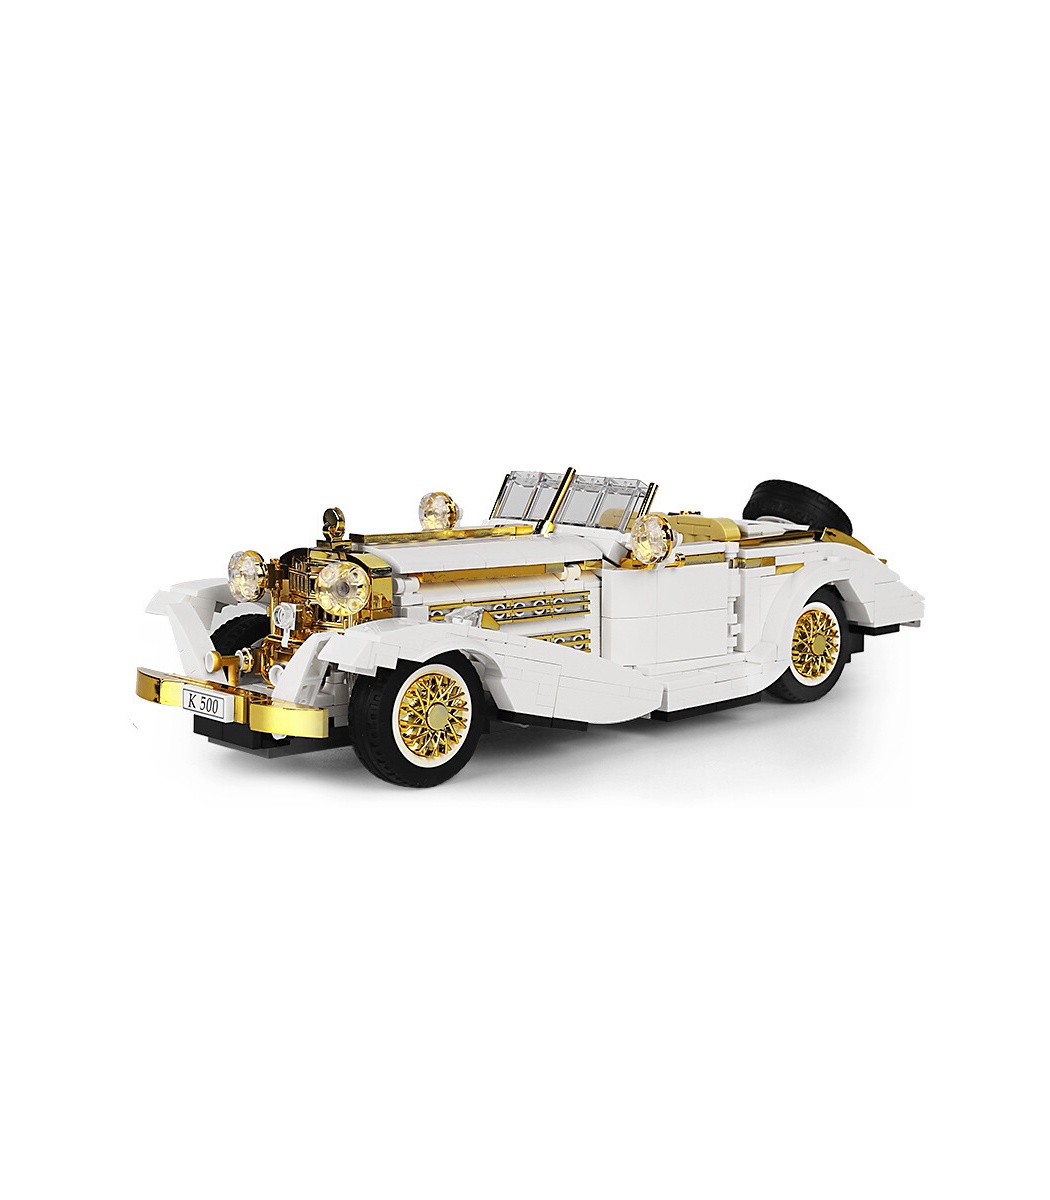 MOLD KING 10003 K500 Nostalgique Vintage Classic Car Variété Creative Series Building Blocks Toy Set